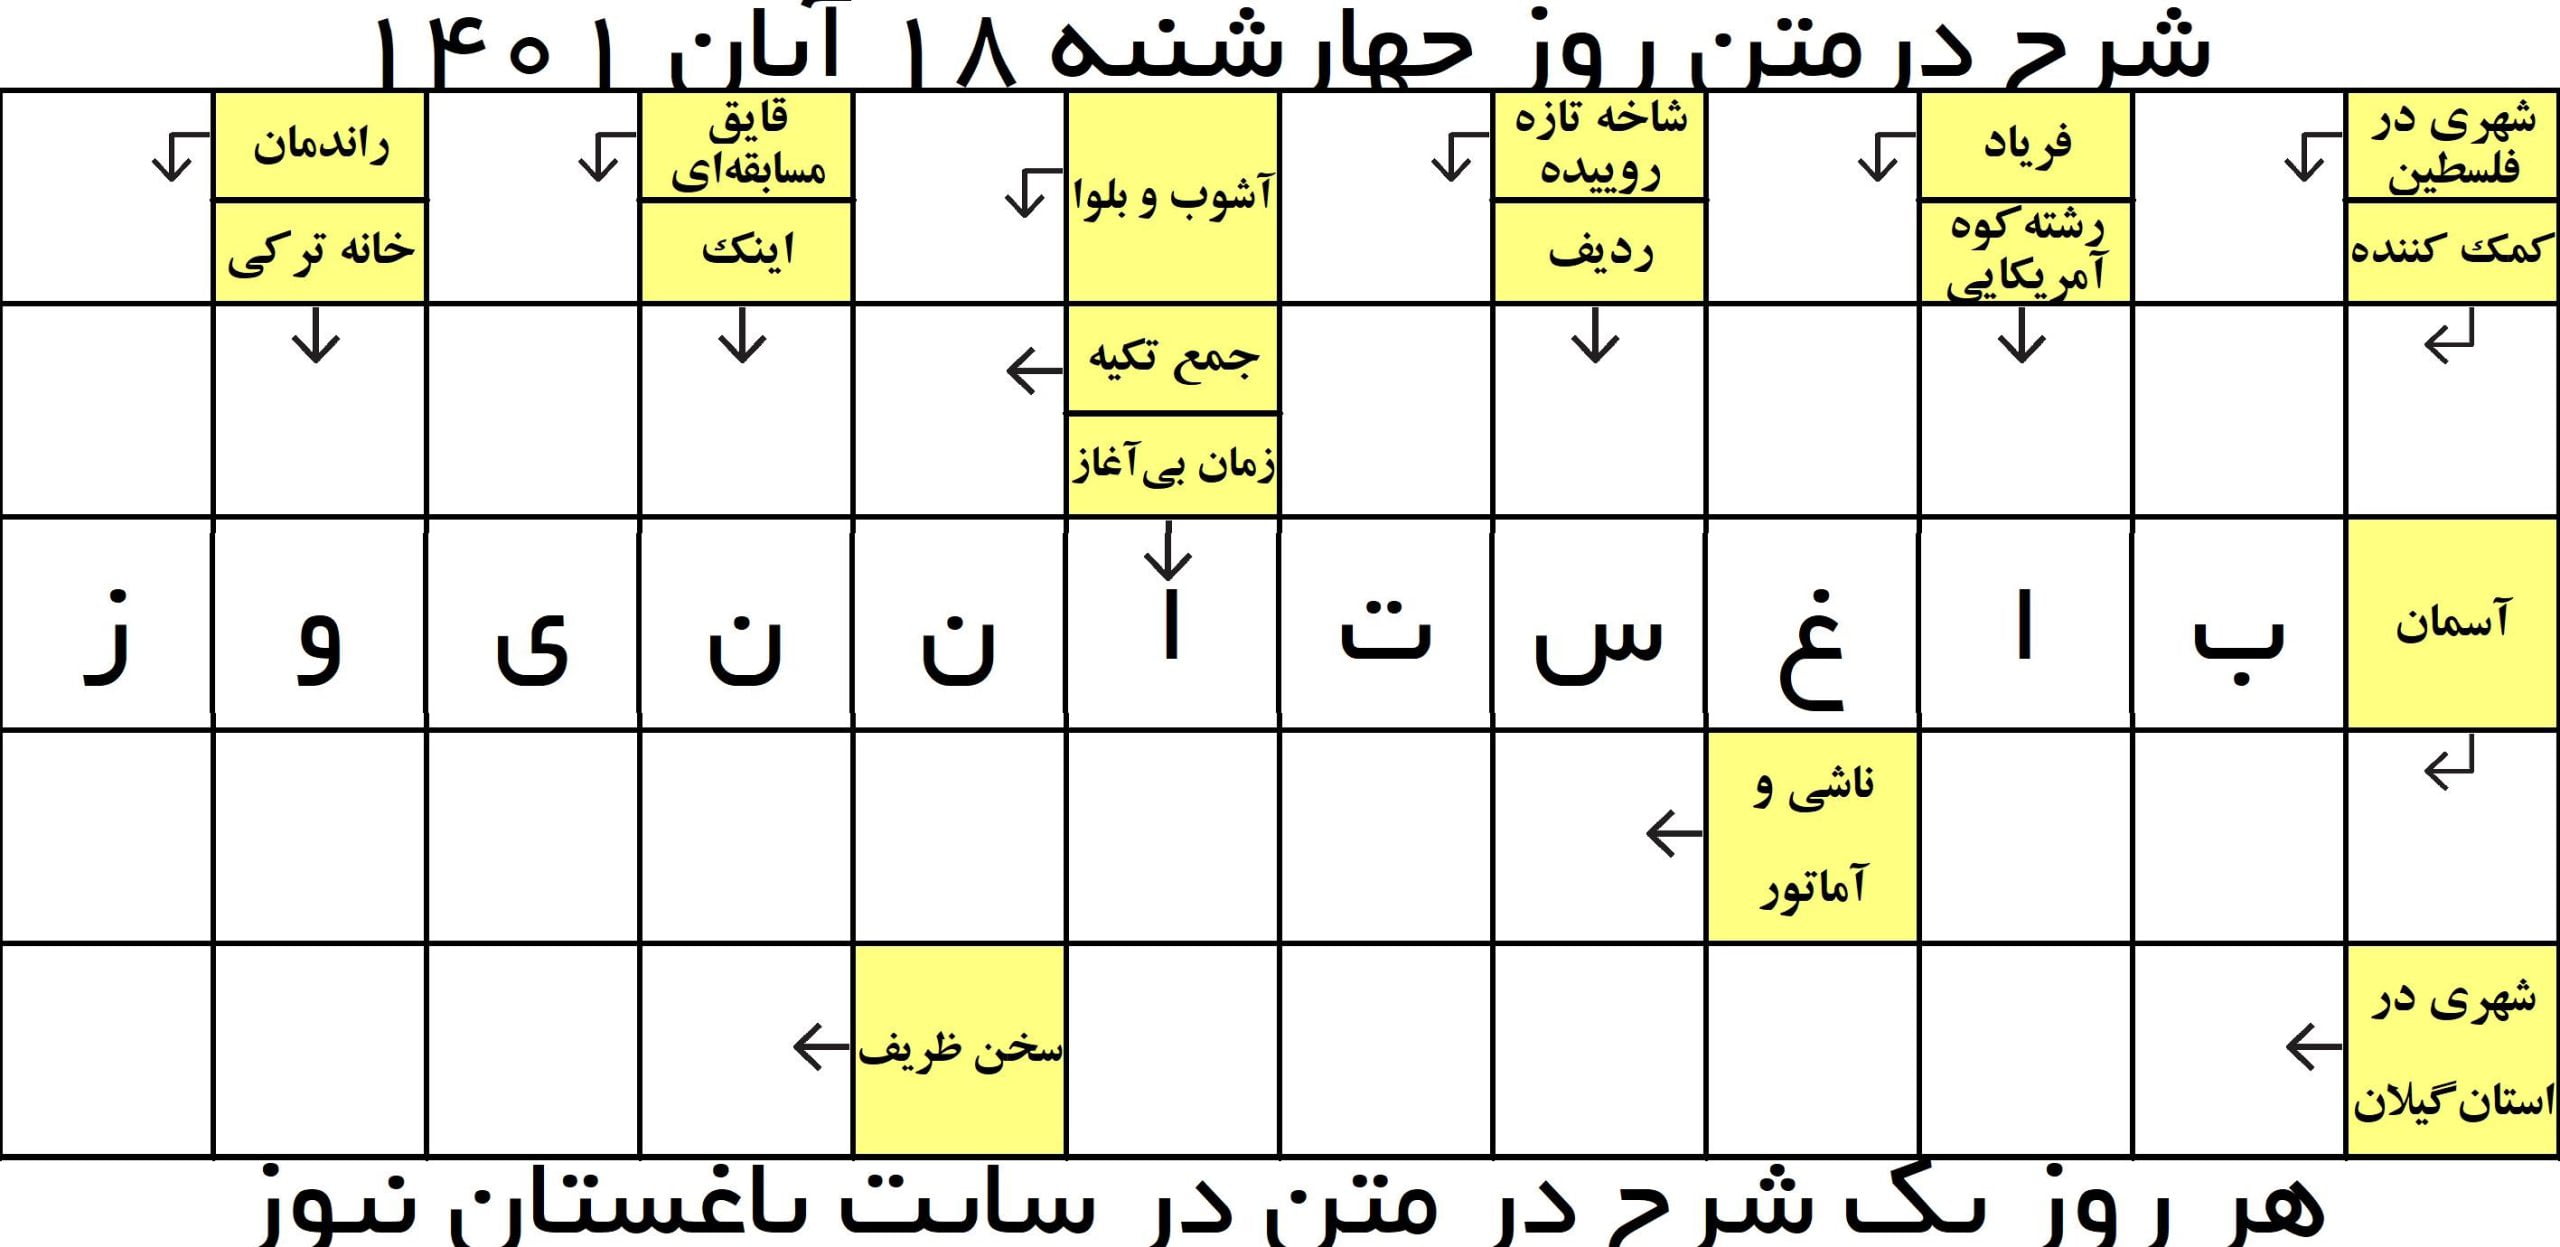 جدول شرح در متن ( تونویسی ) آنلاین روز چهارشنبه 18 آبان 1401